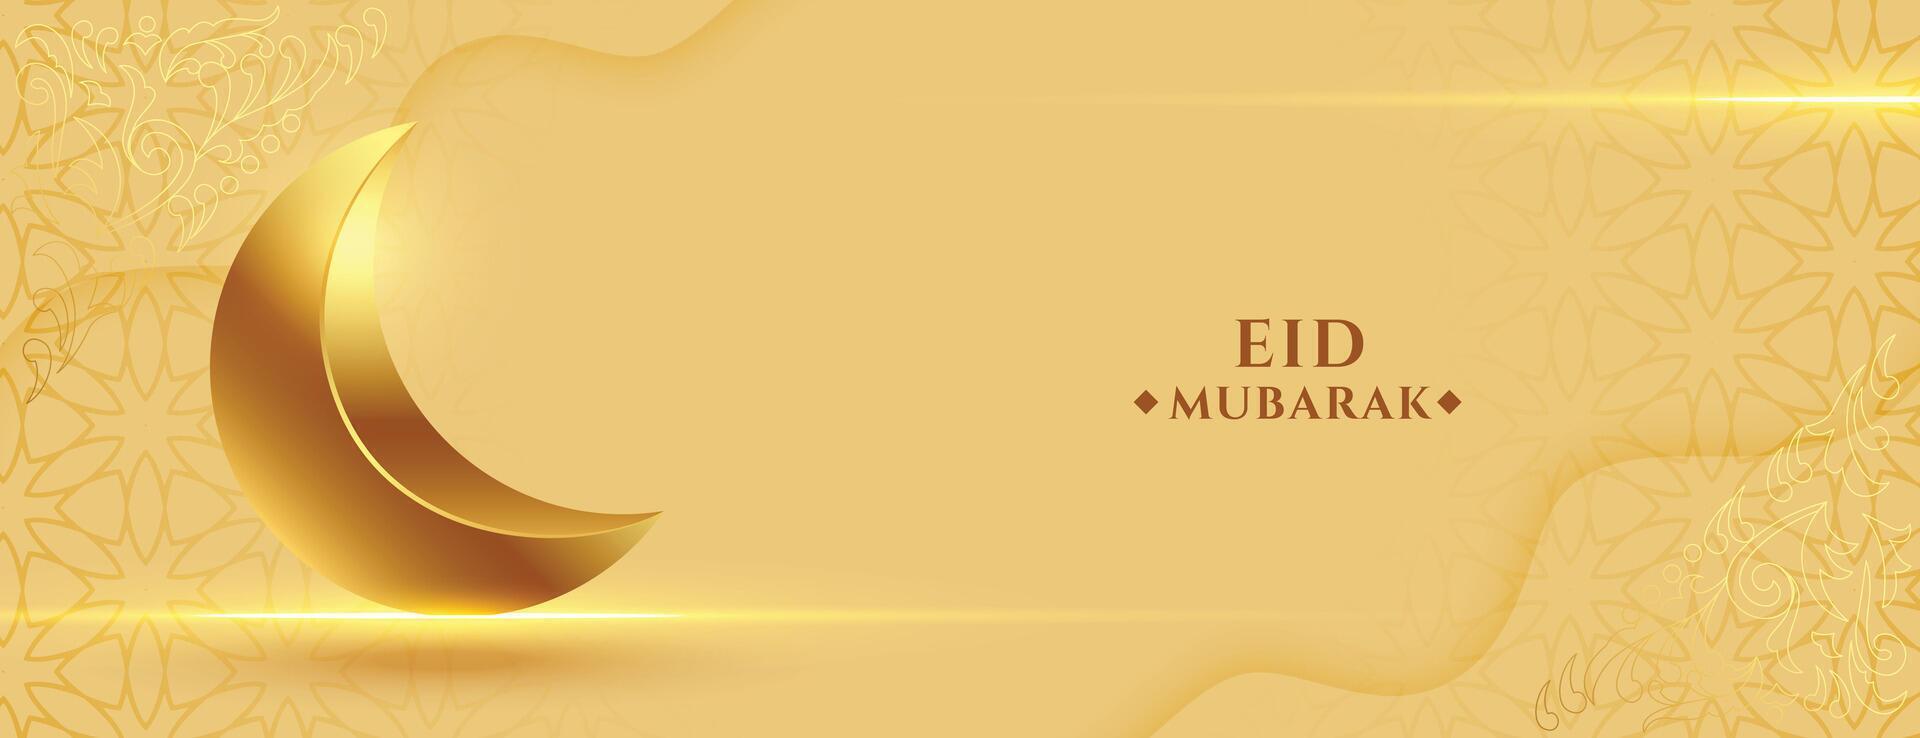 celebrar el santo festival eid ul fitr póster con dorado 3d creciente vector